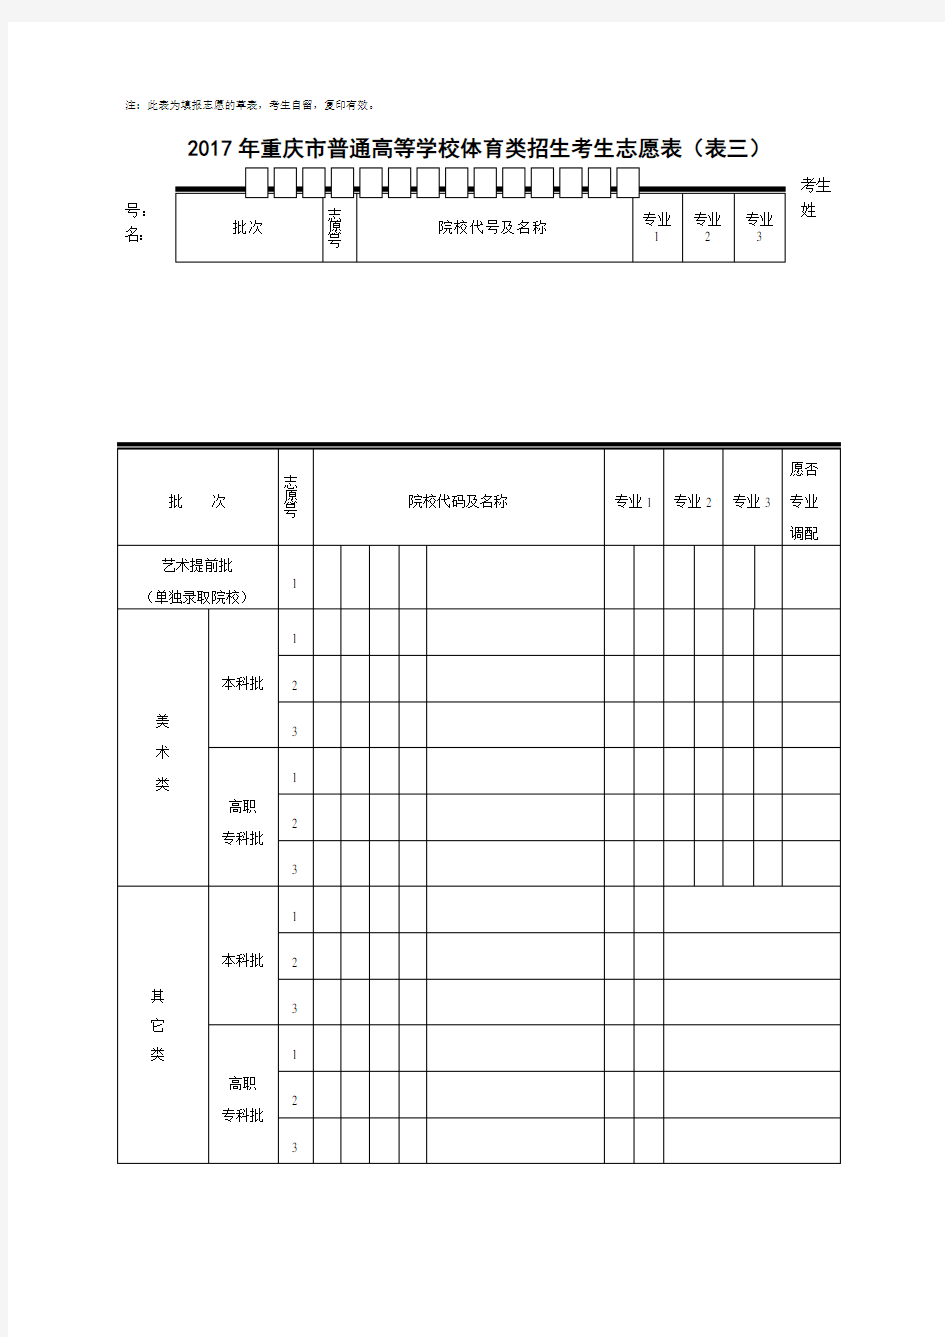 重庆市普通高校招生考生志愿表样表